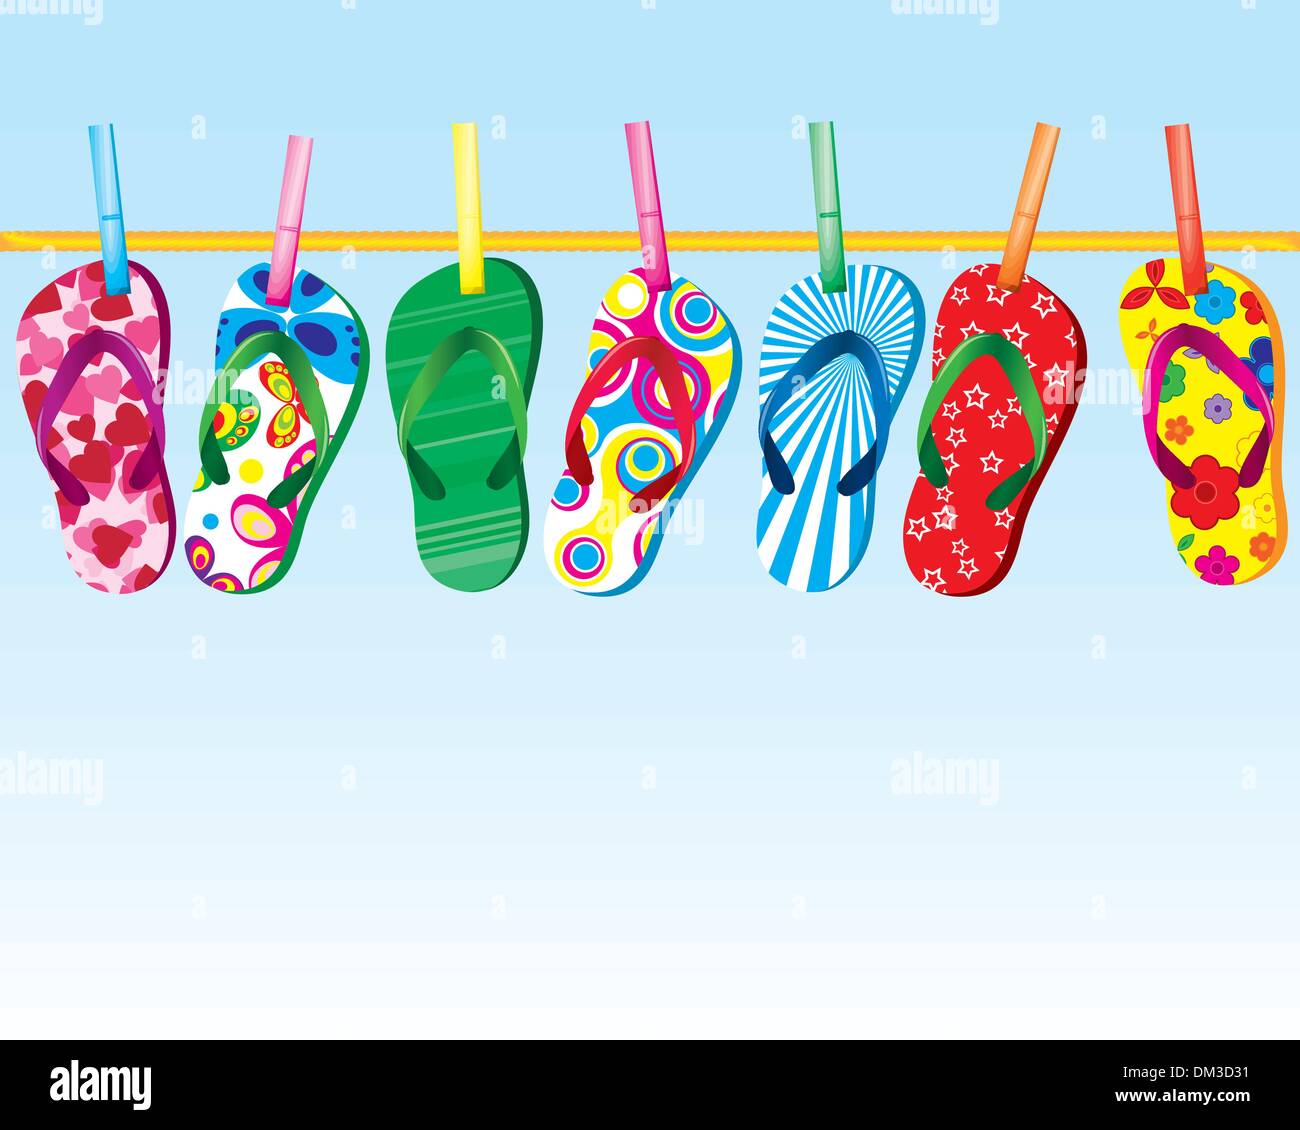 Flip flop sandals on clothes line sous jolie sky Illustration de Vecteur